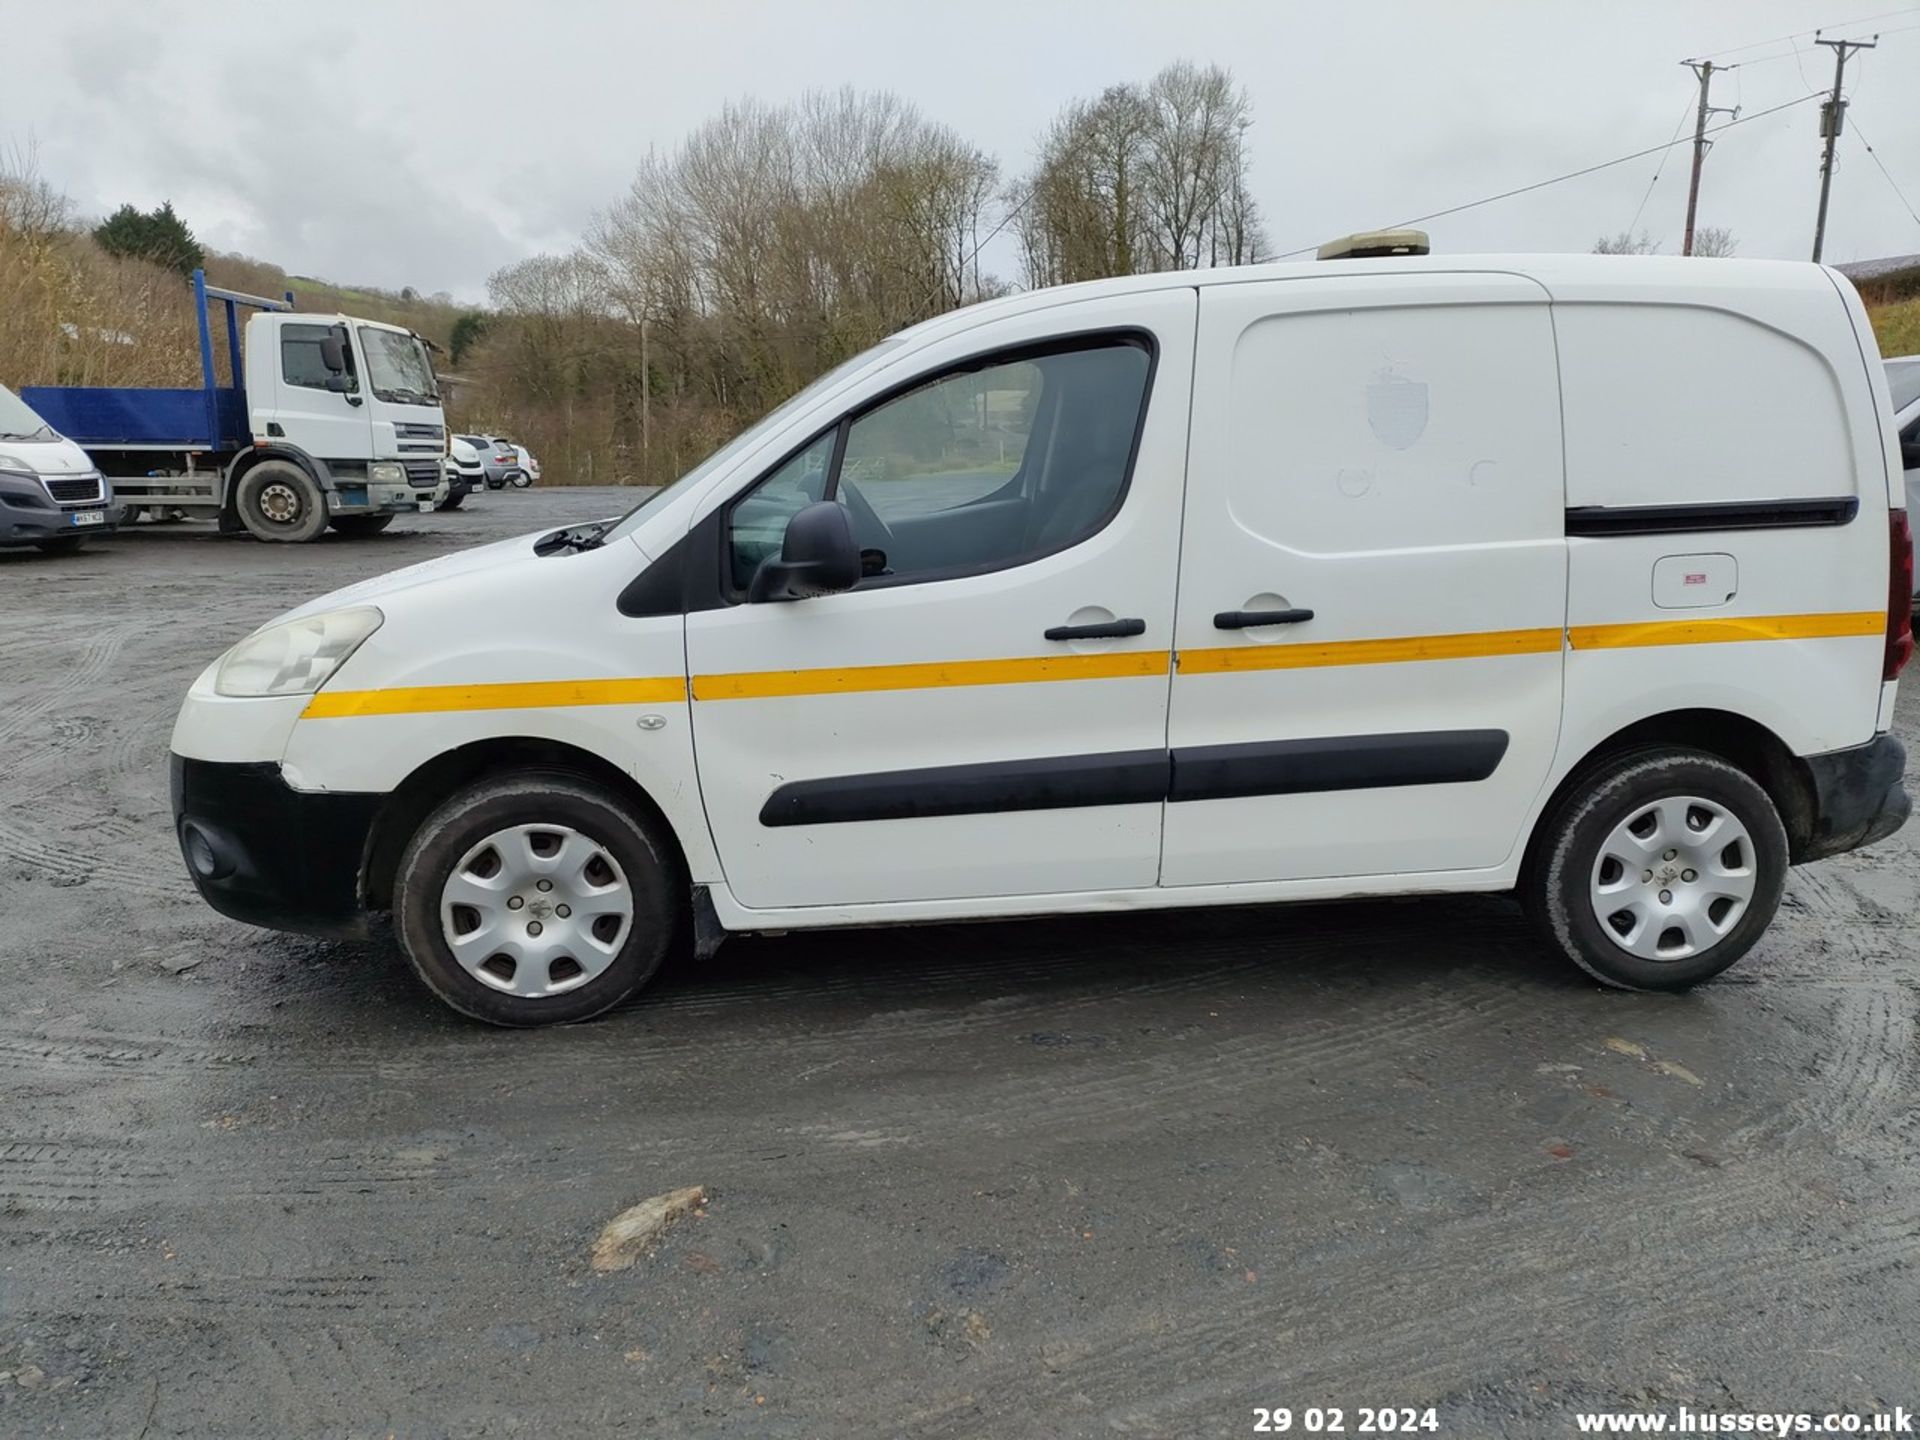 13/63 PEUGEOT PARTNER 850 SE L1 HDI - 1560cc 5dr Van (White, 115k) - Image 18 of 56